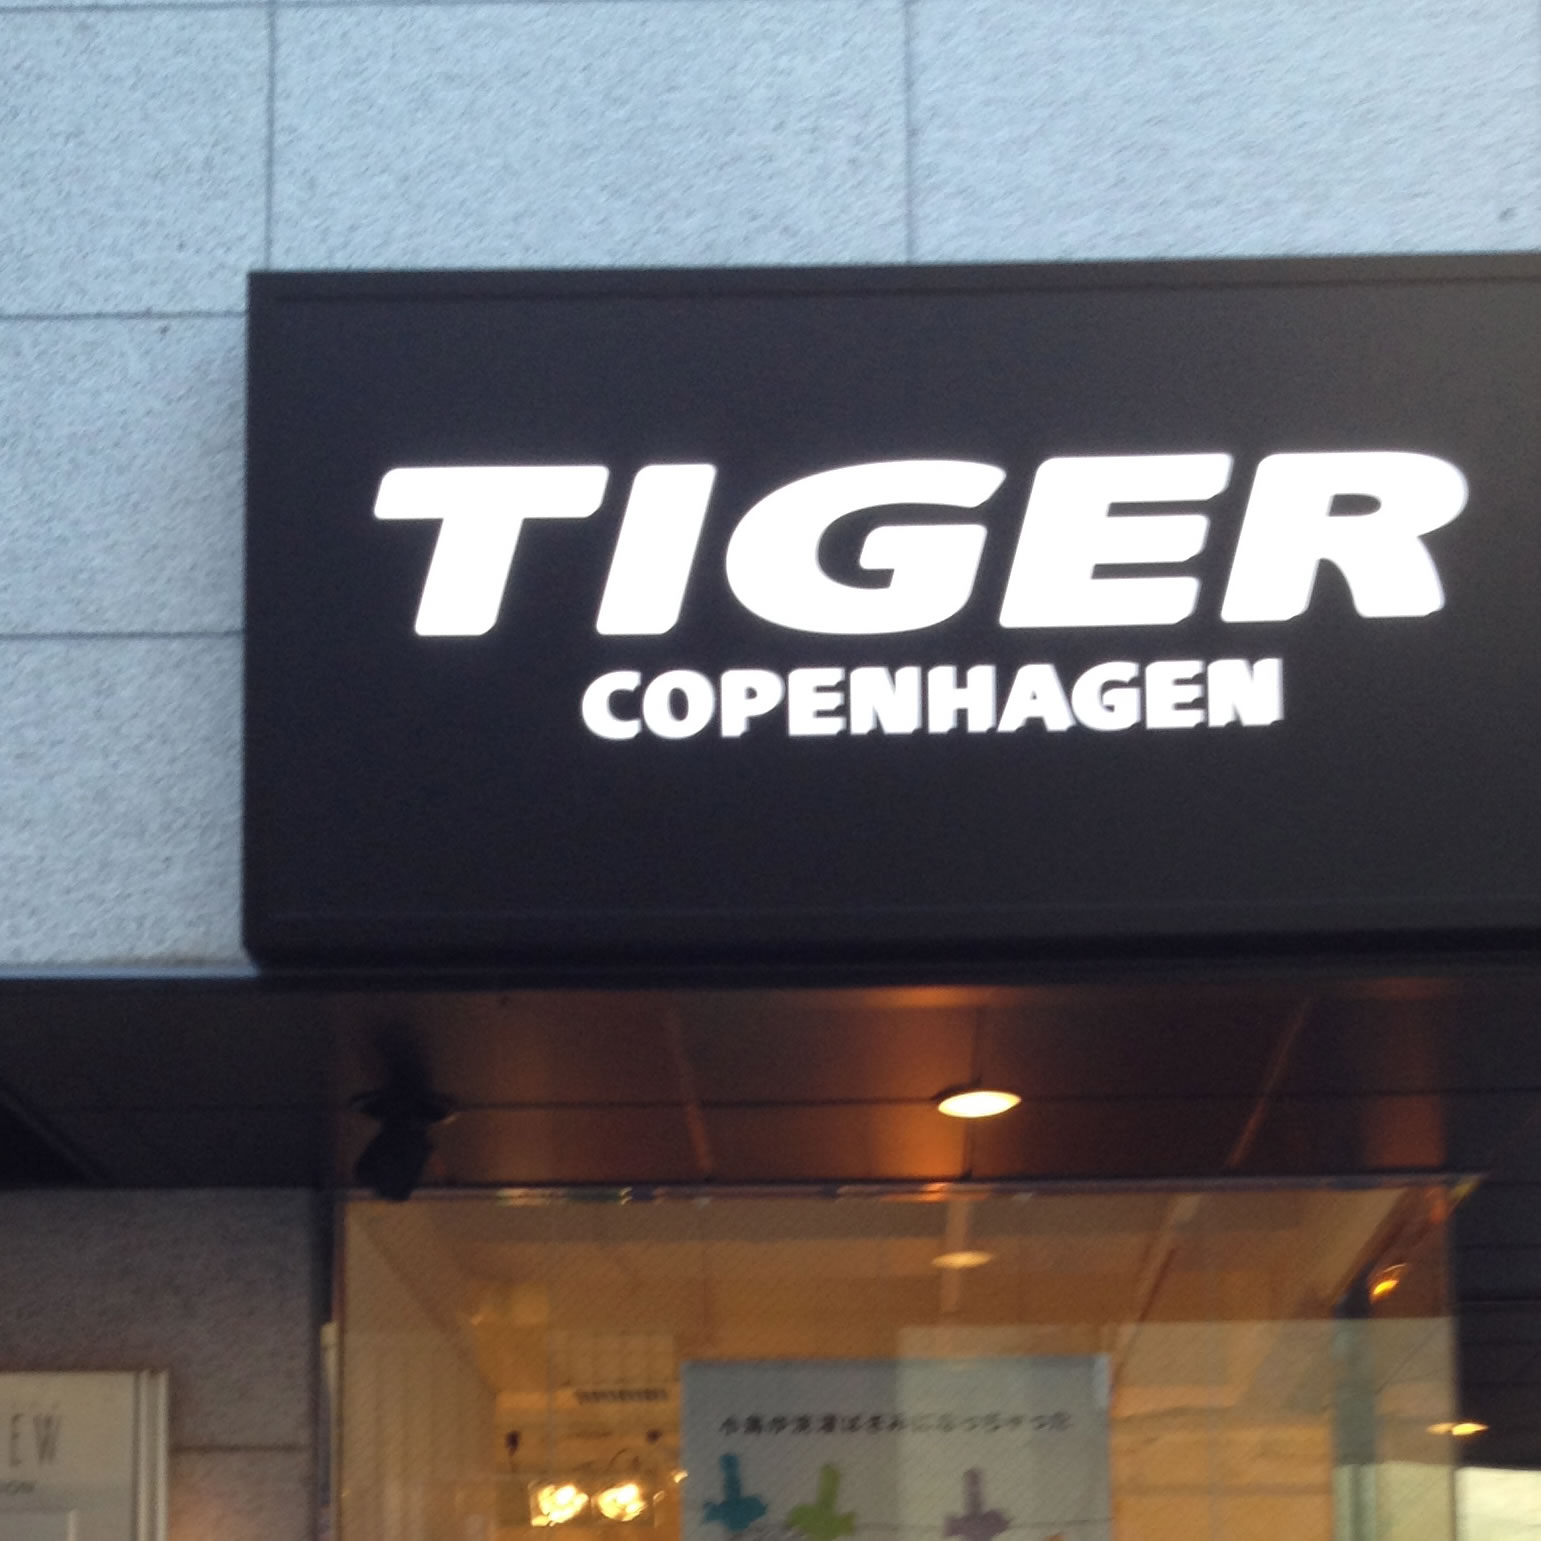 TIGER COPENHAGEN